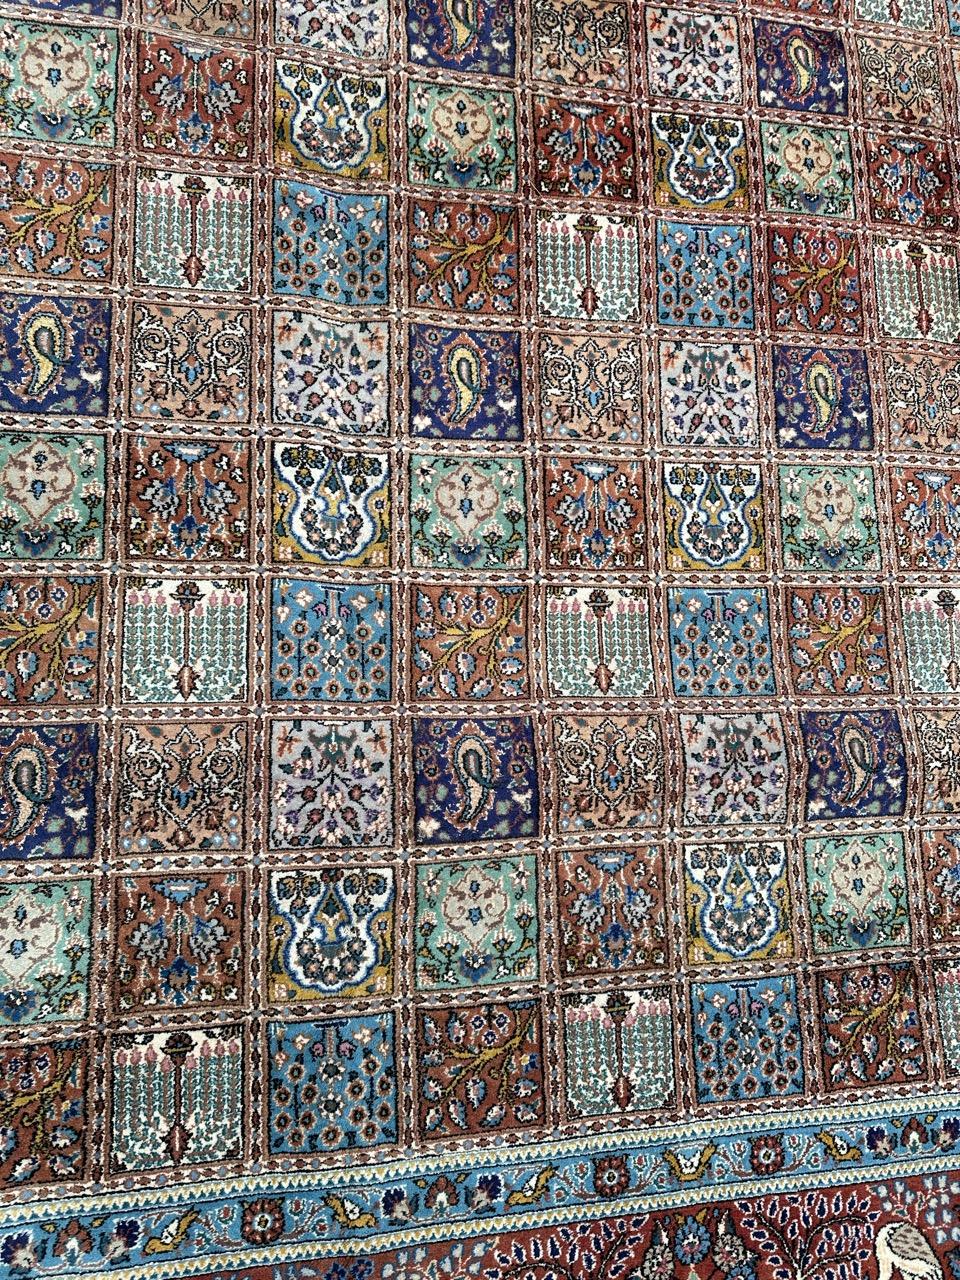 Hübscher Vintage-Mood-Teppich (in der Nähe des Qom), mit schönem Gittermuster mit verschiedenen Mustern in jeder Fliese, und wiederholt, mit schönen Farben in blau, grün, rot, orange und gelb. Vollständig handgeknüpft mit Wollsamt auf Baumwollgrund.